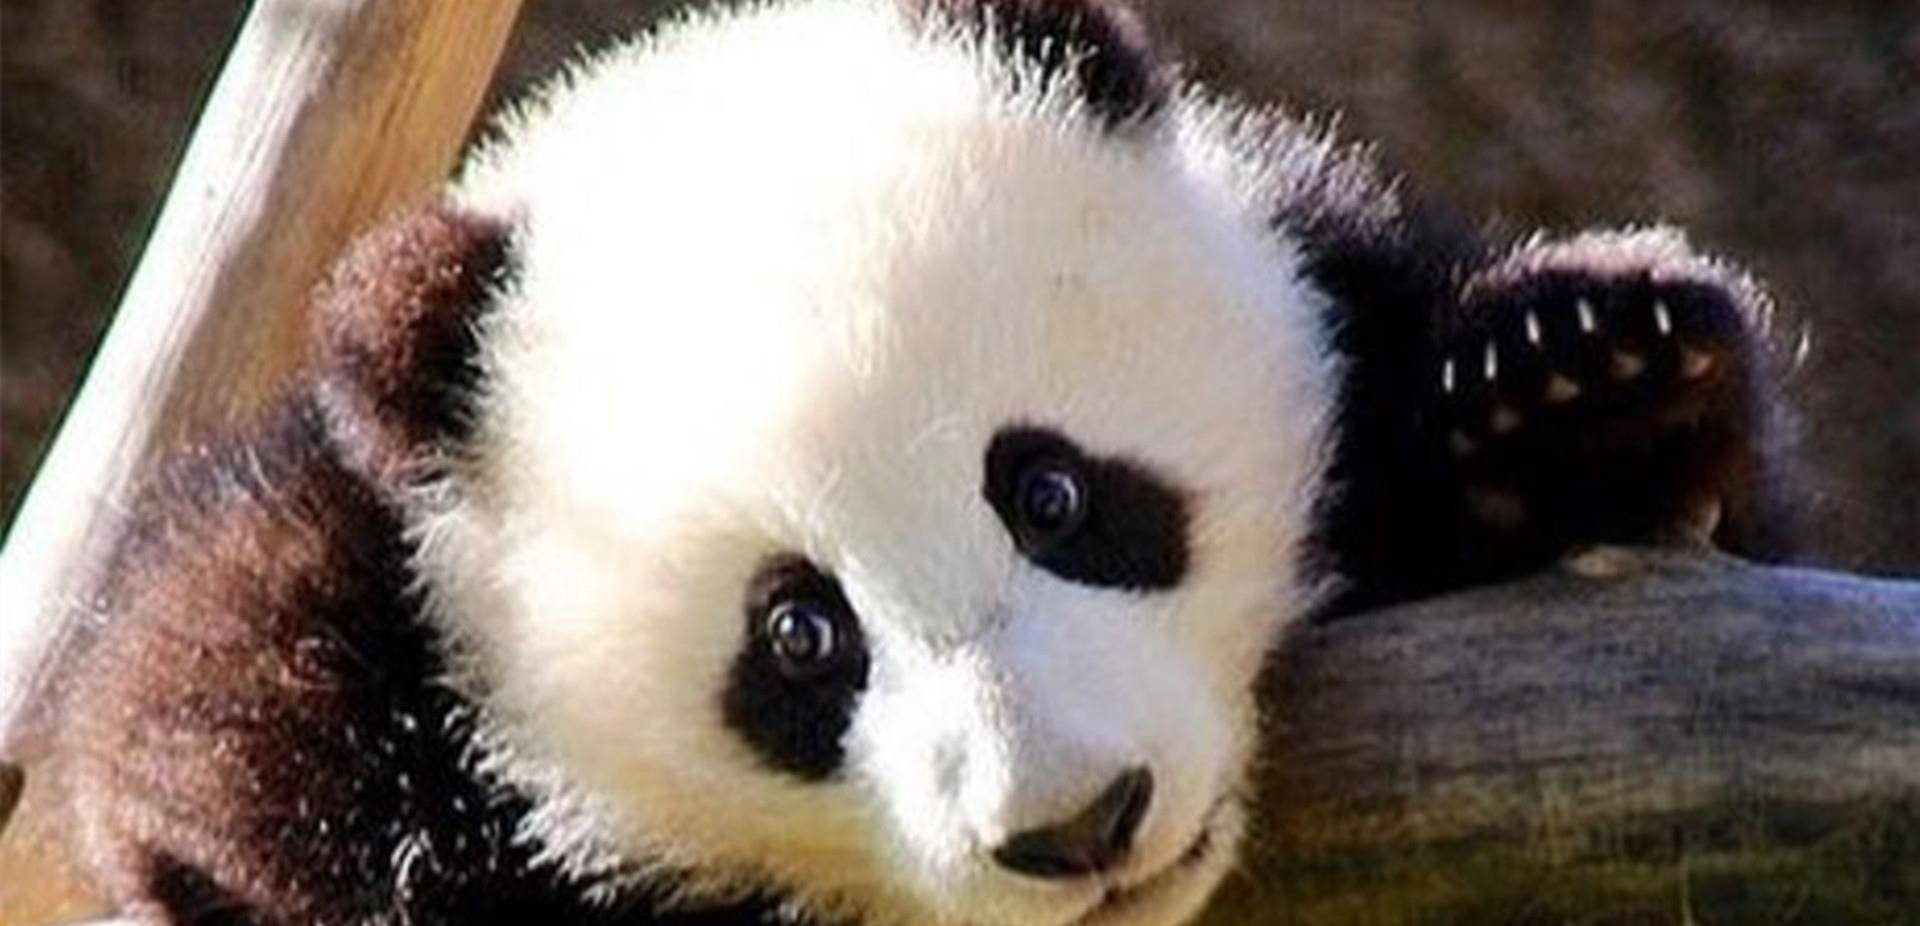 发布一组大熊猫宝宝萌萌哒的照片,真的是太萌了,香香